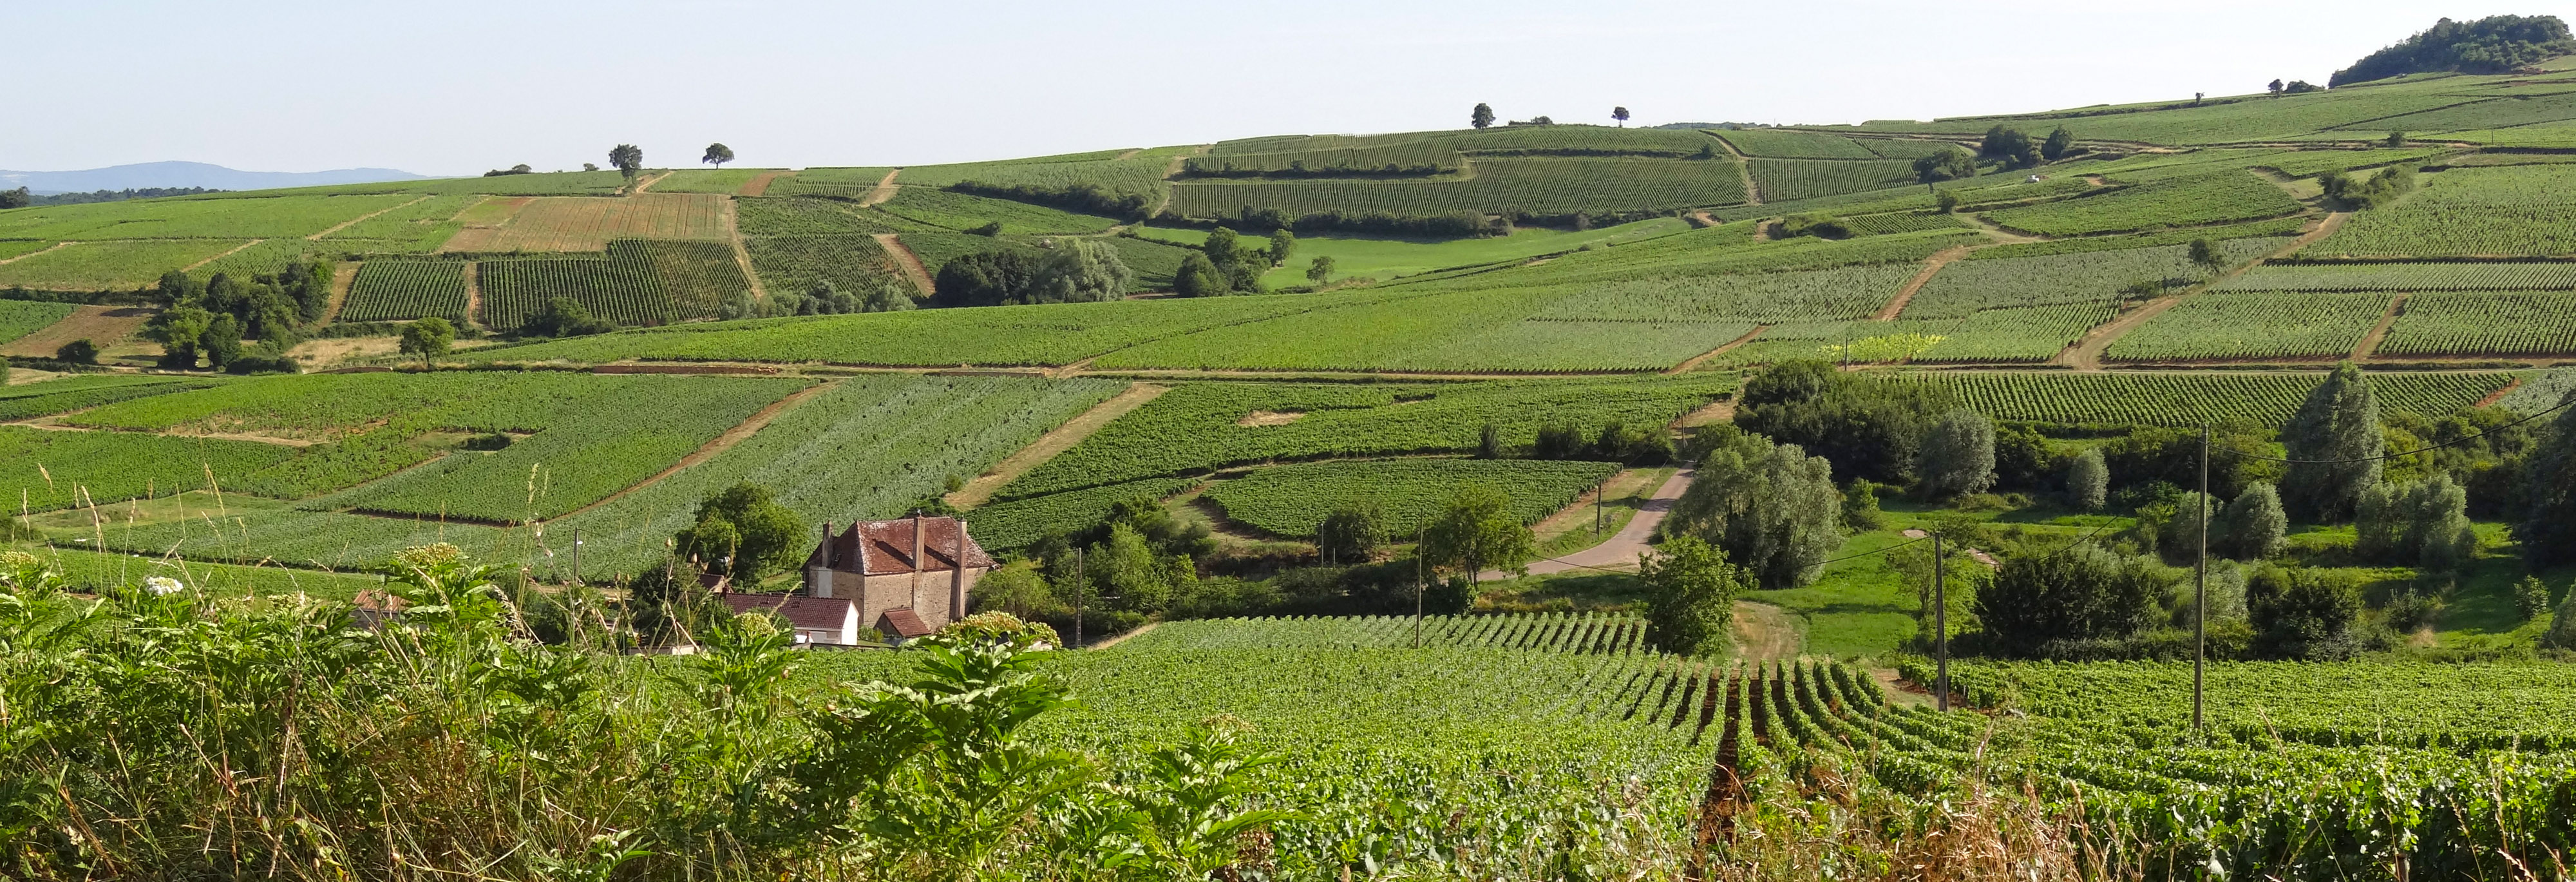 La taille réduite des parcelles de vigne, les arbres isolés, les chemins, apportent une touche jardinée et maîtrisée au paysage. Montagny-lès-Buxy en grand format (nouvelle fenêtre)